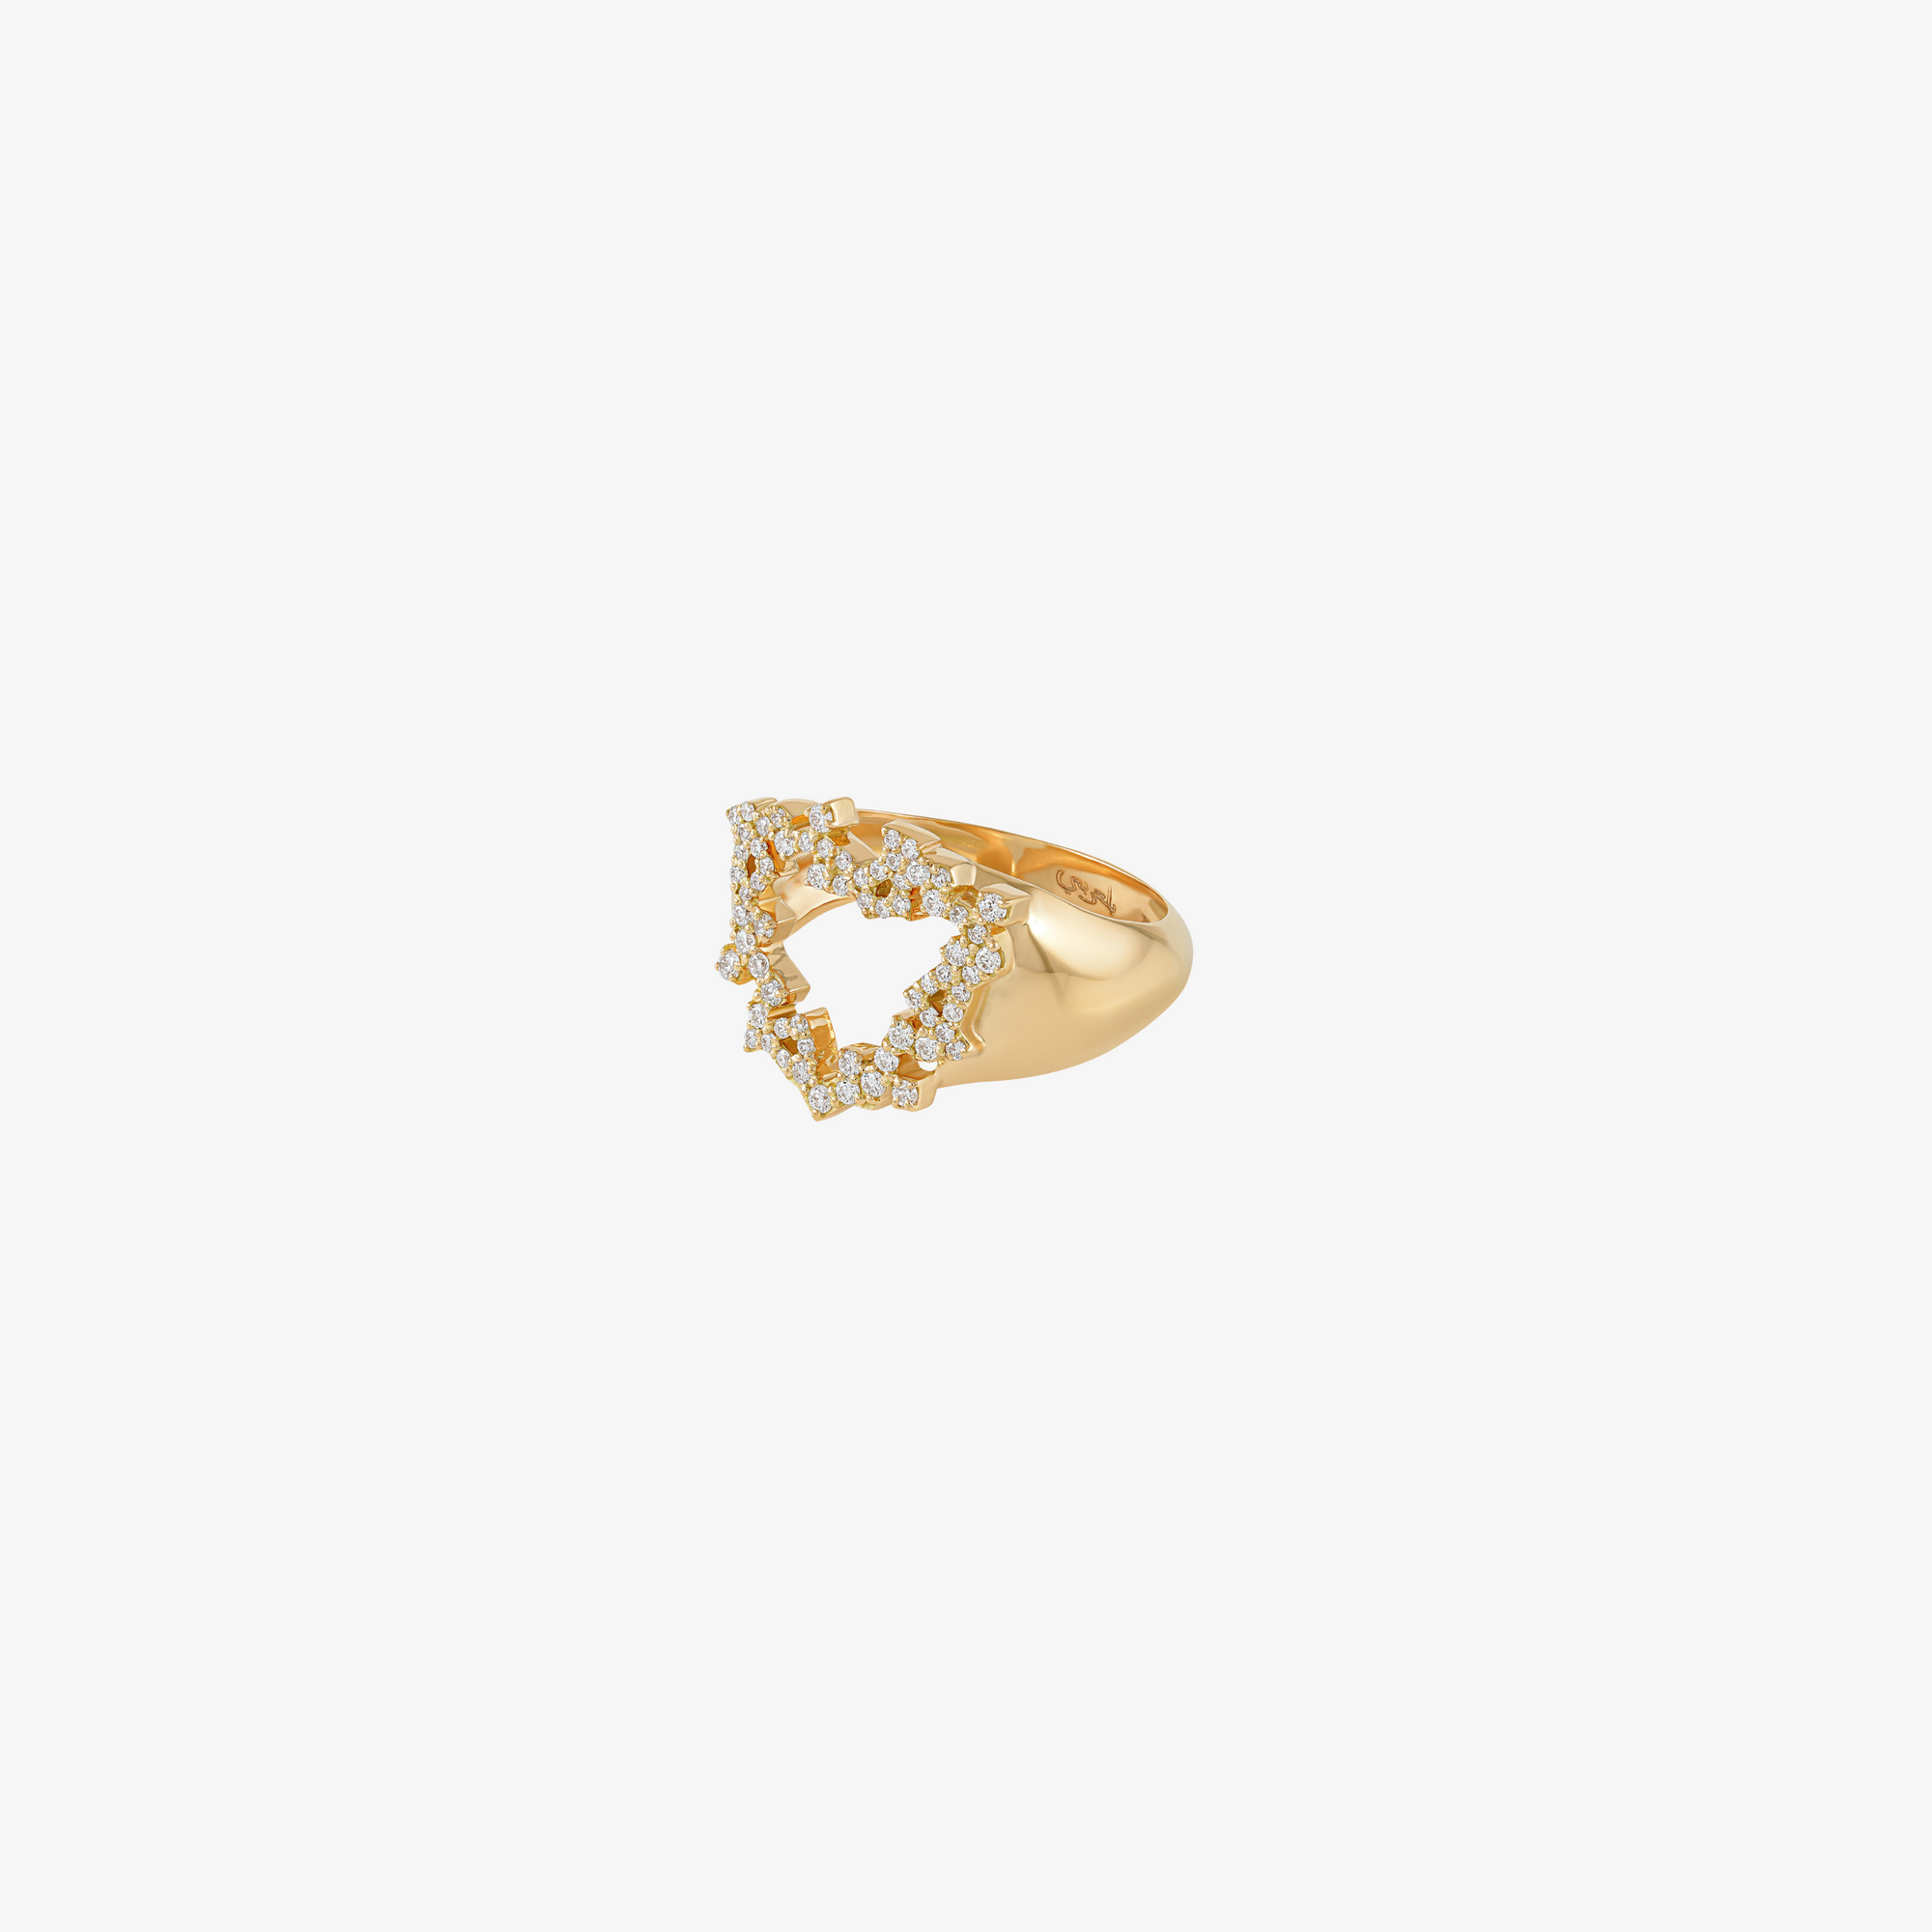 HOBB — Gold & Diamond "Love" Ring